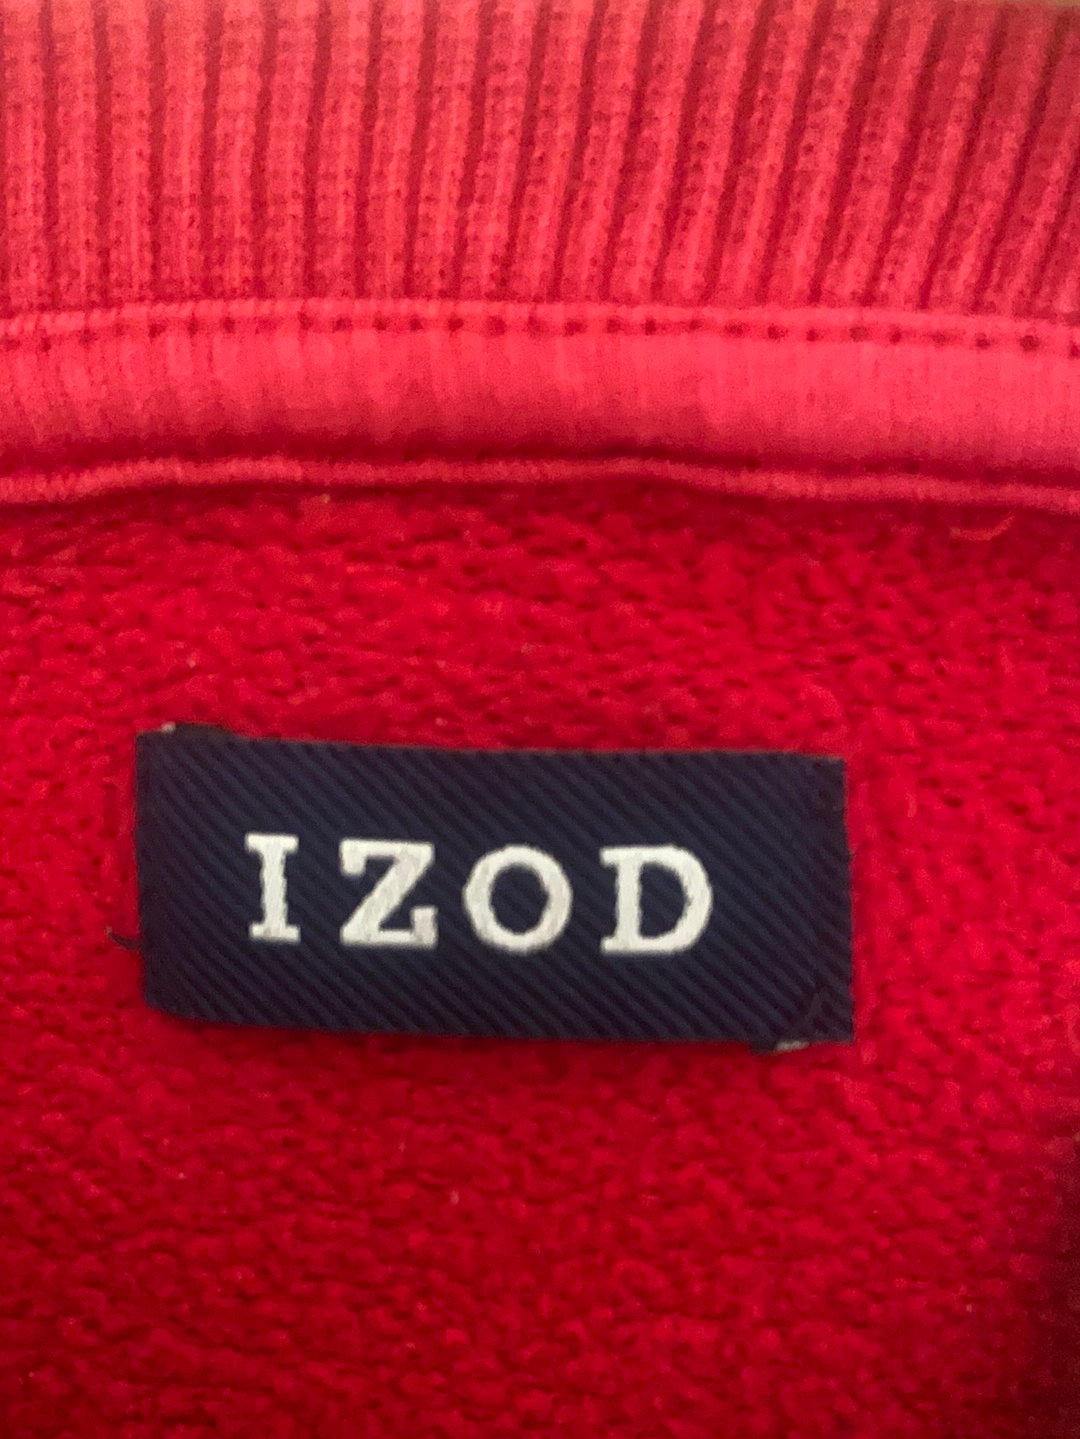 IZOD Vintage Sweatshirt - Large